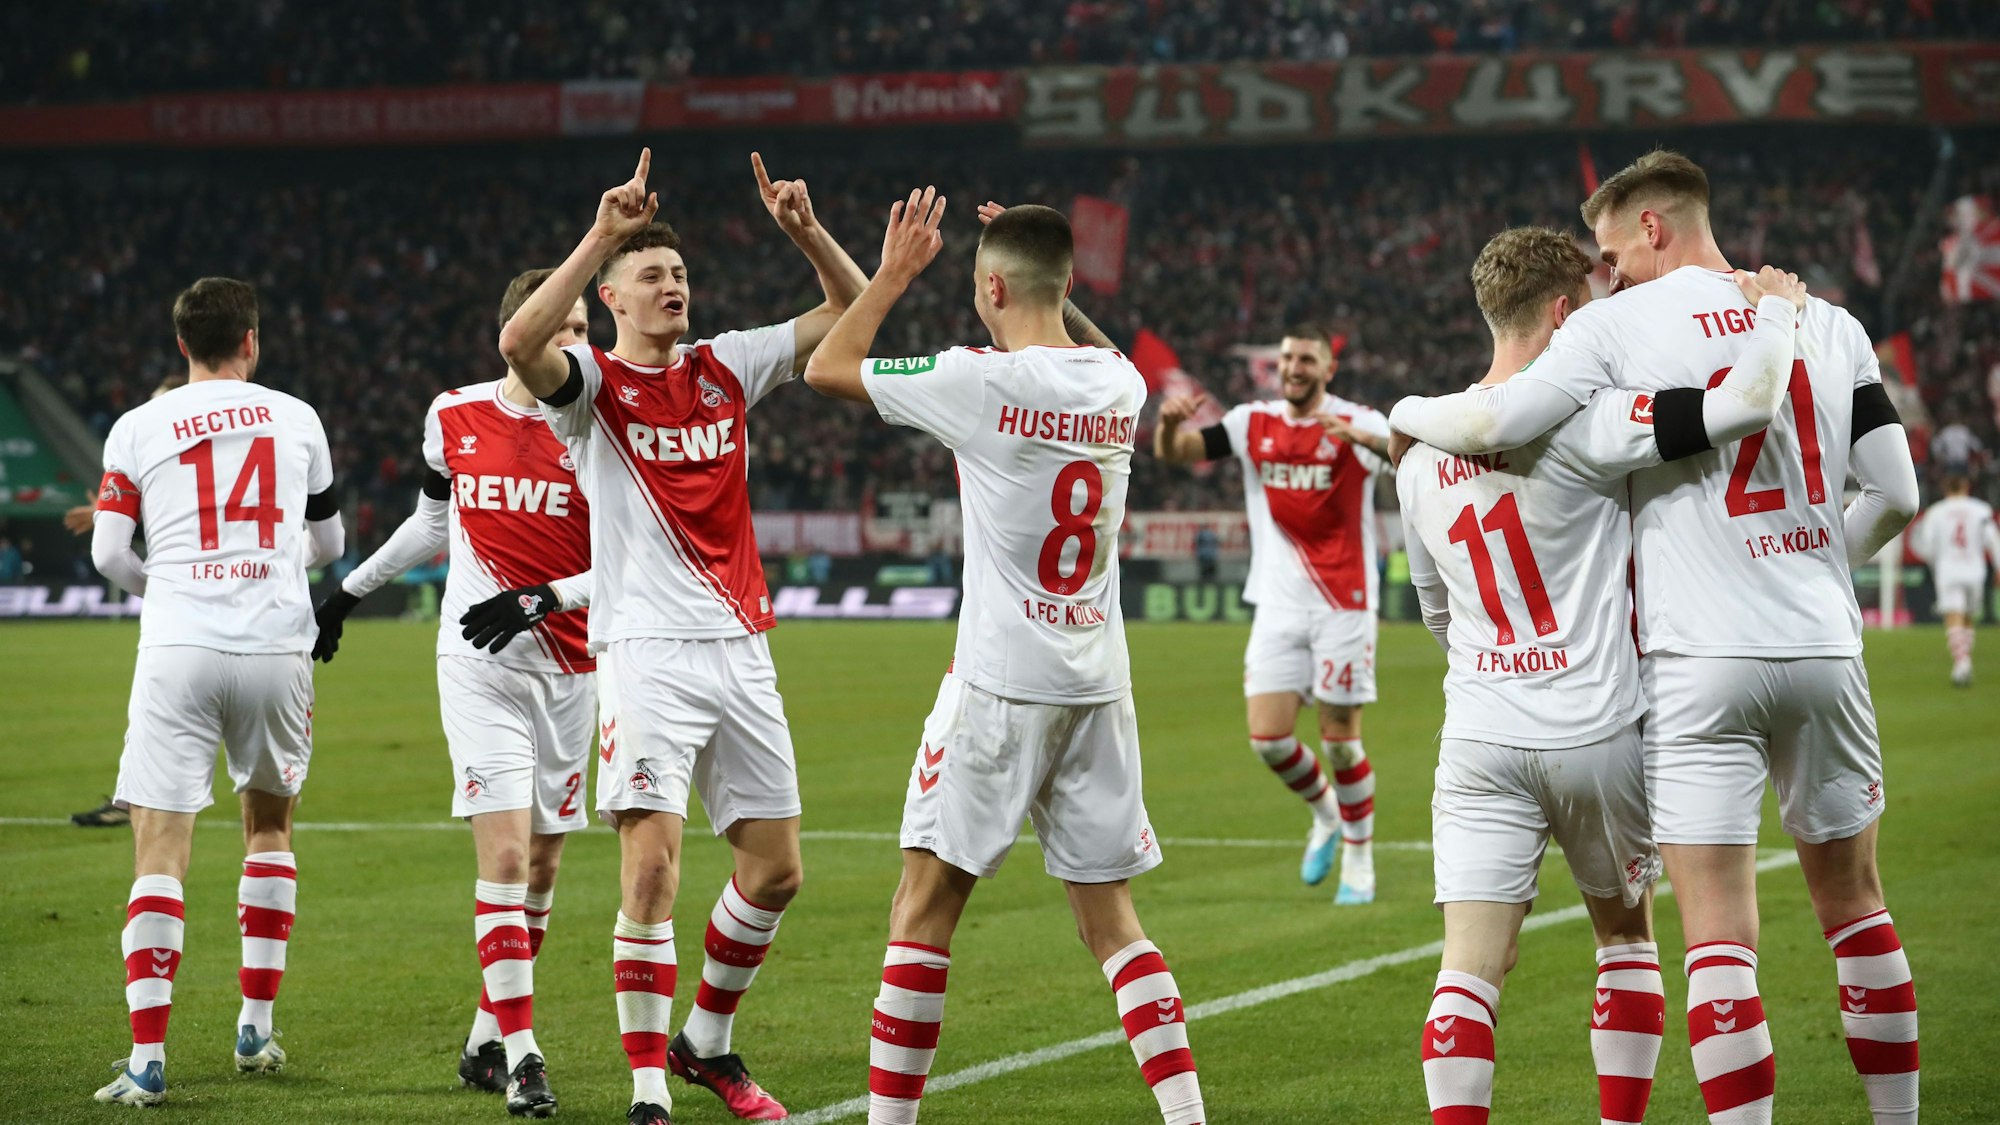 Die Spieler des FC Köln jubeln nach einem Treffer gegen Werder Bremen in der vergangenen Saison.








